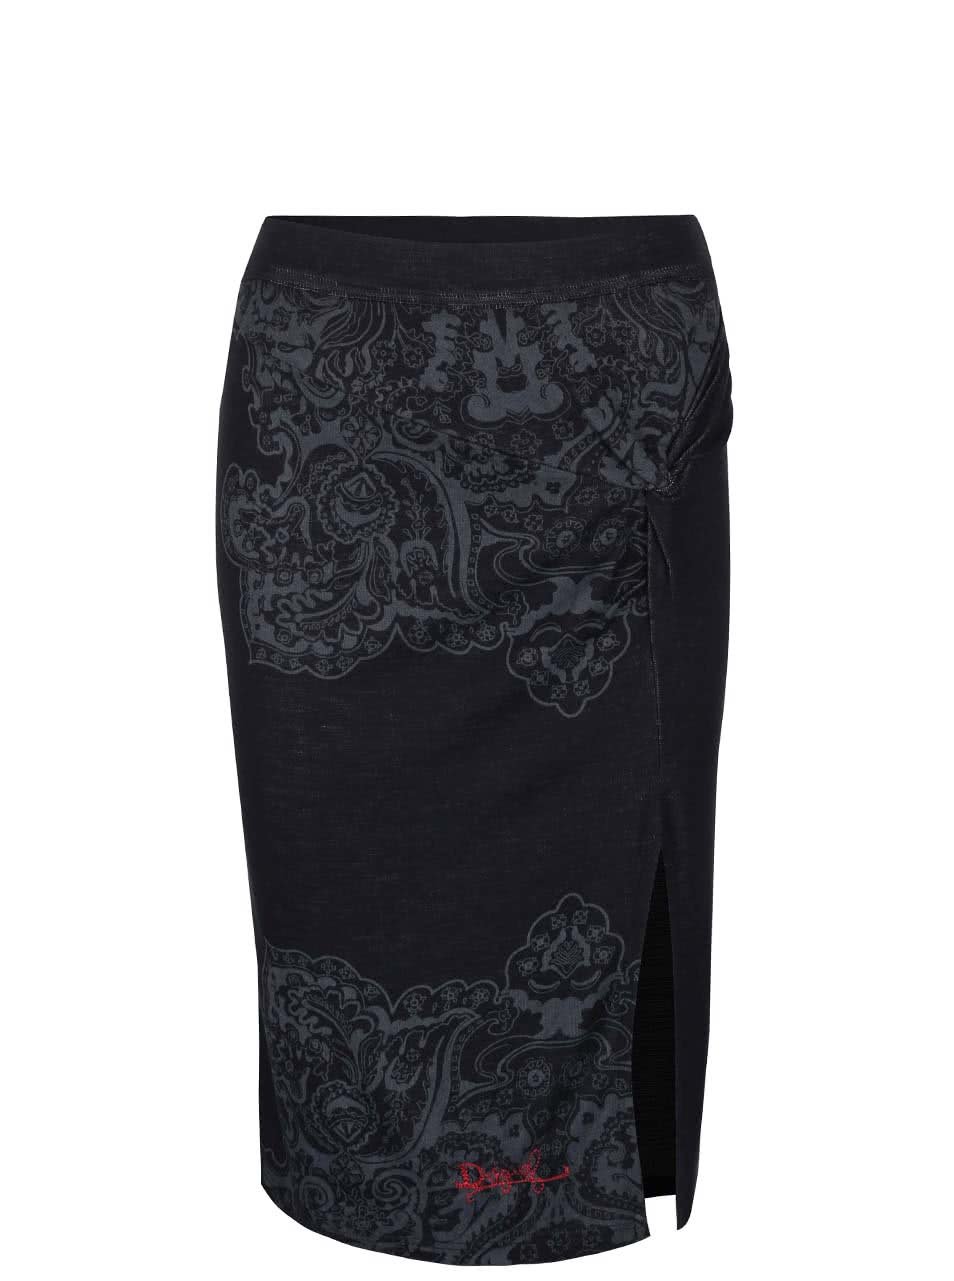 Černá sukně s šedými ornamenty a rozparkem Desigual Hielo